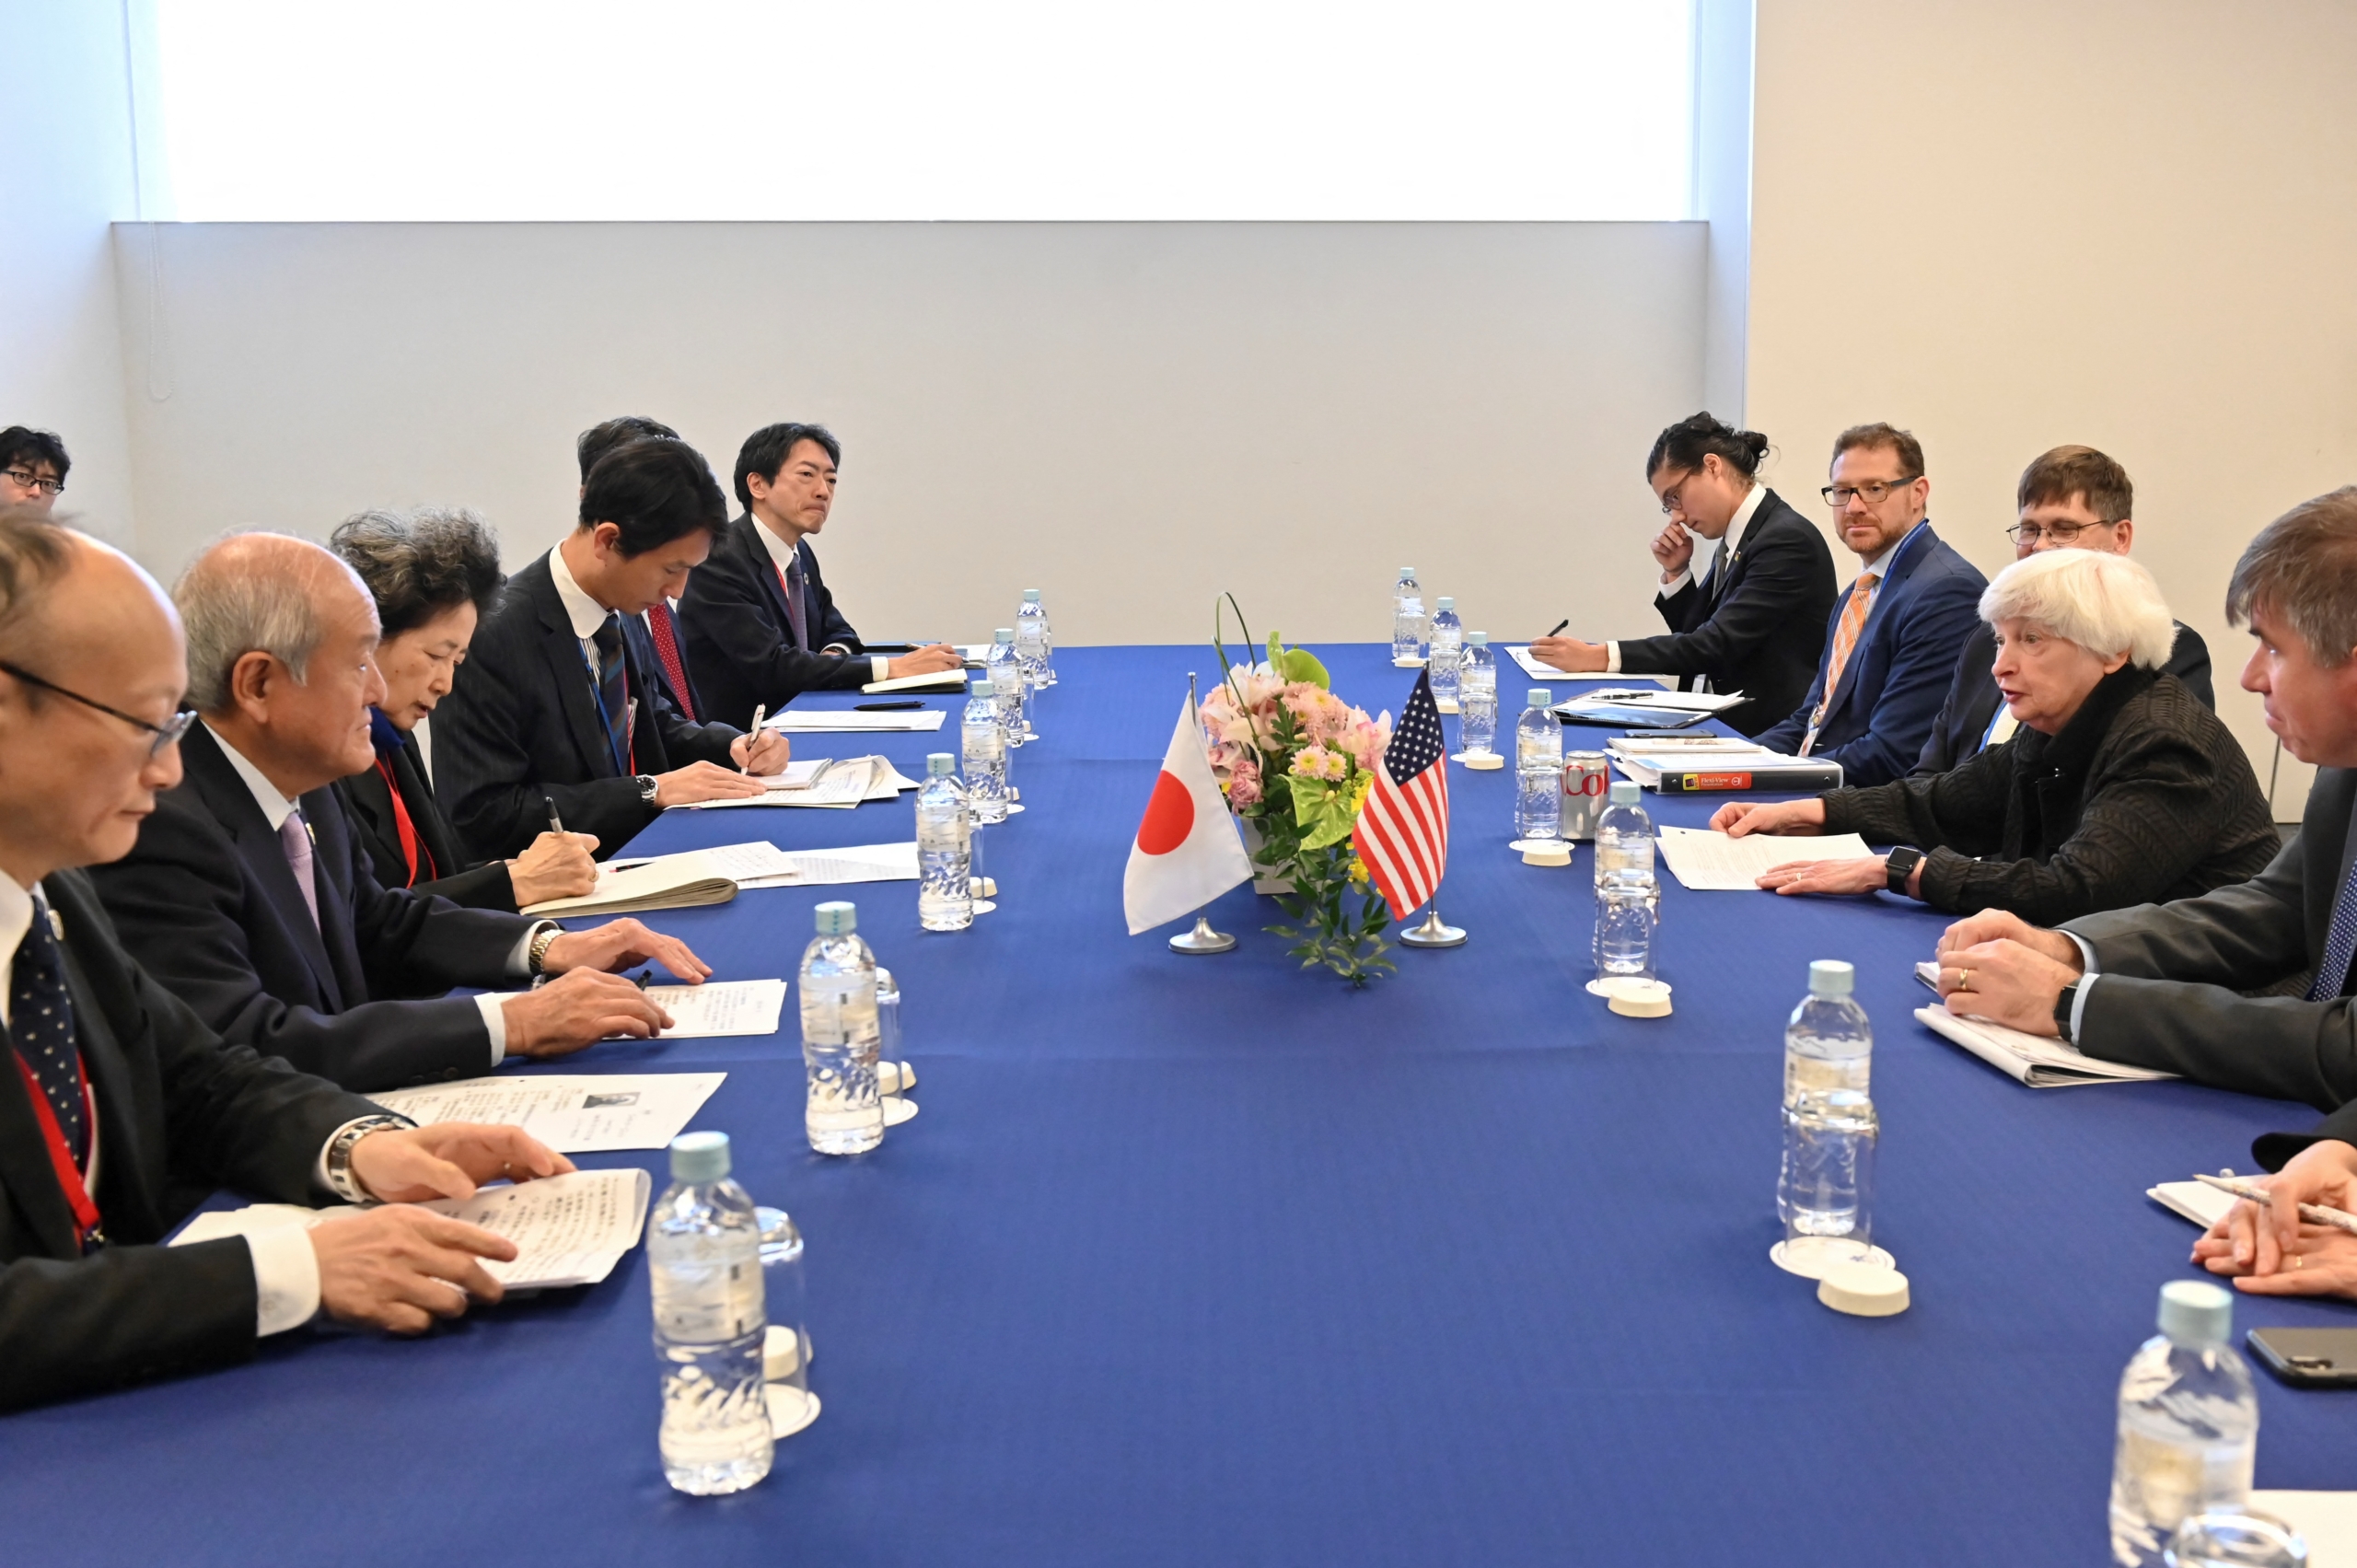 Bộ trưởng Ngân khố Hoa Kỳ Janet Yellen (thứ 2 từ phải qua) và Bộ trưởng Tài chính Nhật Bản Shunichi Suzuki (thứ 2 từ trái qua) tổ chức cuộc họp của họ trong khuôn khổ Hội nghị các Bộ trưởng Tài chính và Thống đốc Ngân hàng Trung ương G7 tại Toki Messe ở Niigata hôm 13/05/2023. (Ảnh: Kazuhiro Nogi/AFP qua Getty Images)